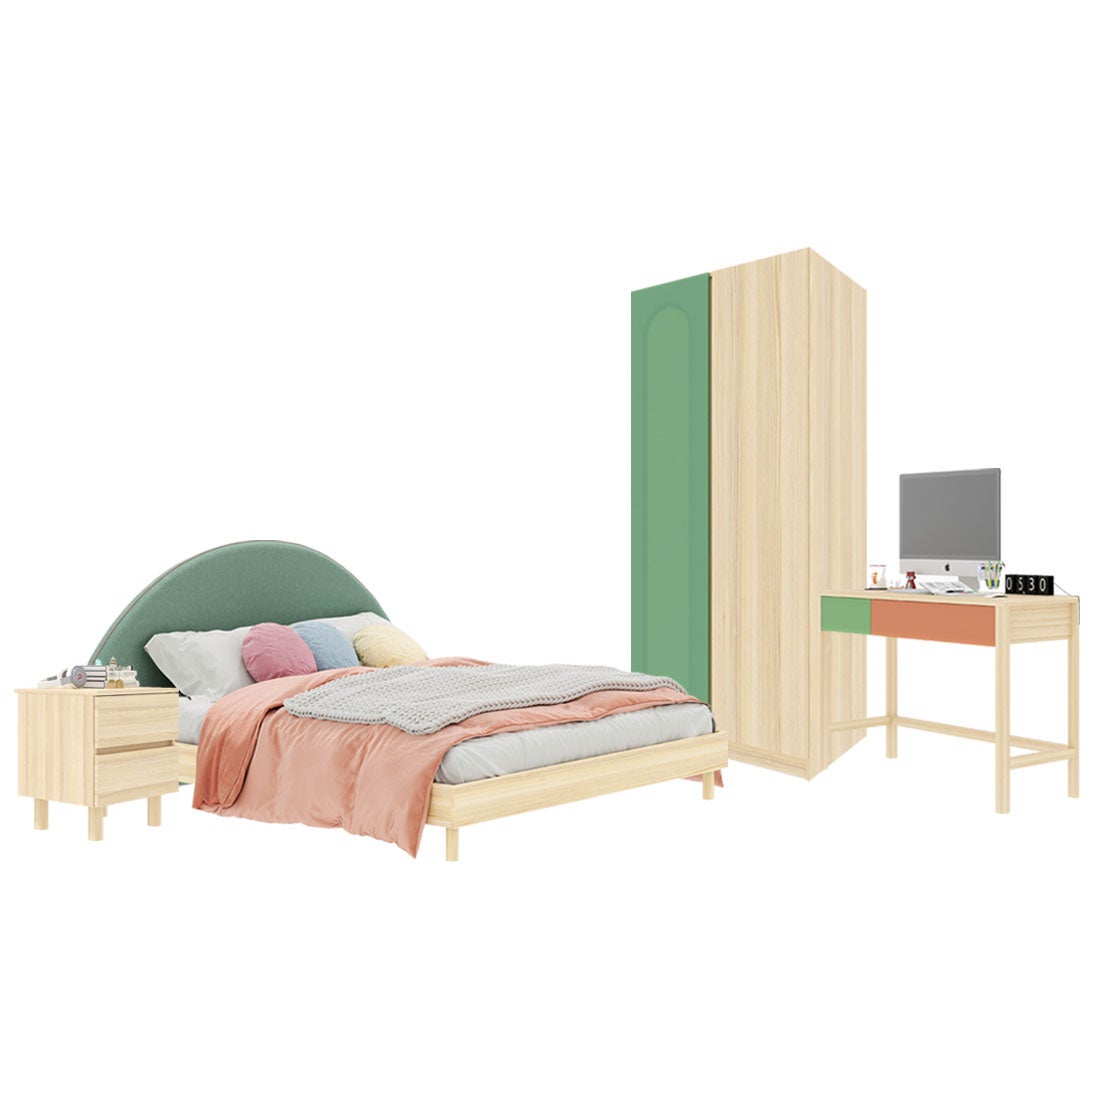 ชุดห้องนอน ขนาด 6 ฟุต-เบาะเขียว รุ่น Bingsoo & ตู้เสื้อผ้า 90 ซม. พร้อมตู้ข้างเตียง สีเขียว01